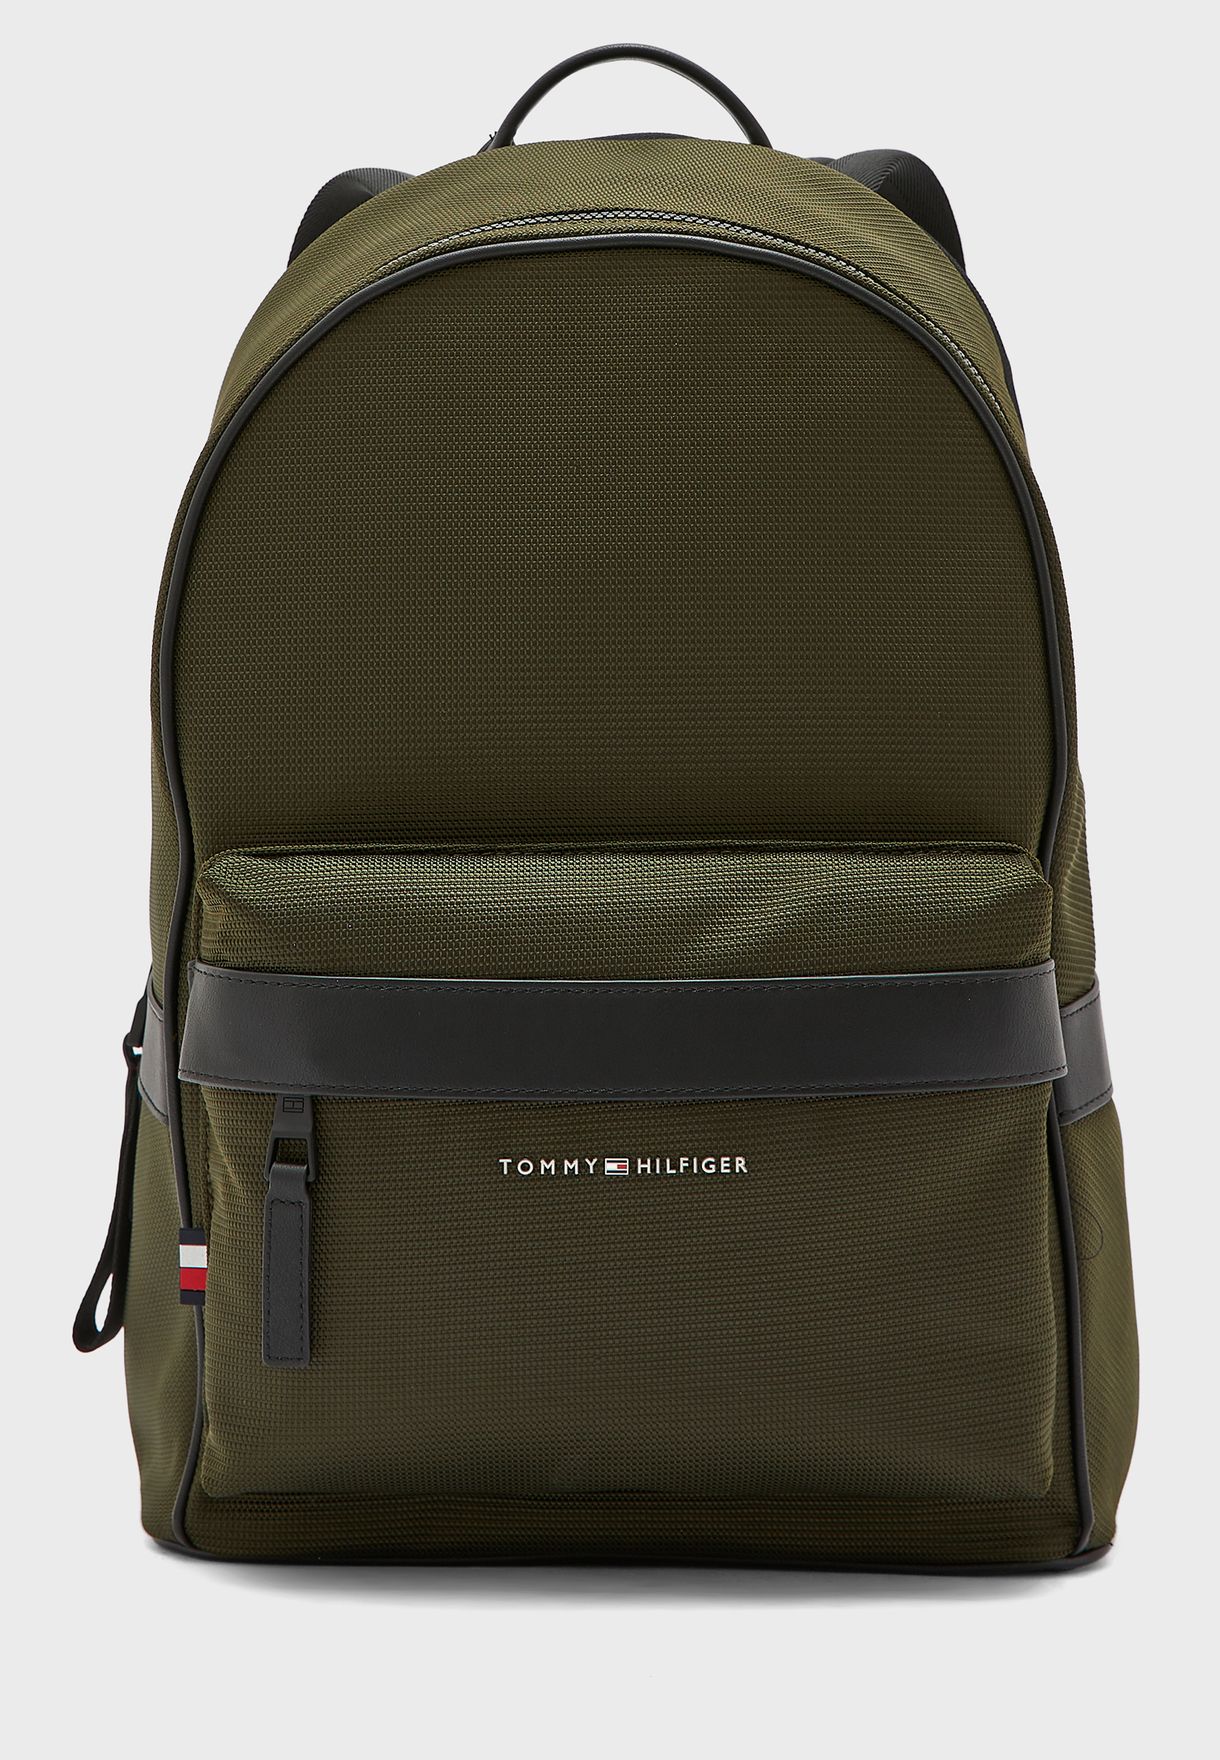 tommy hilfiger green backpack